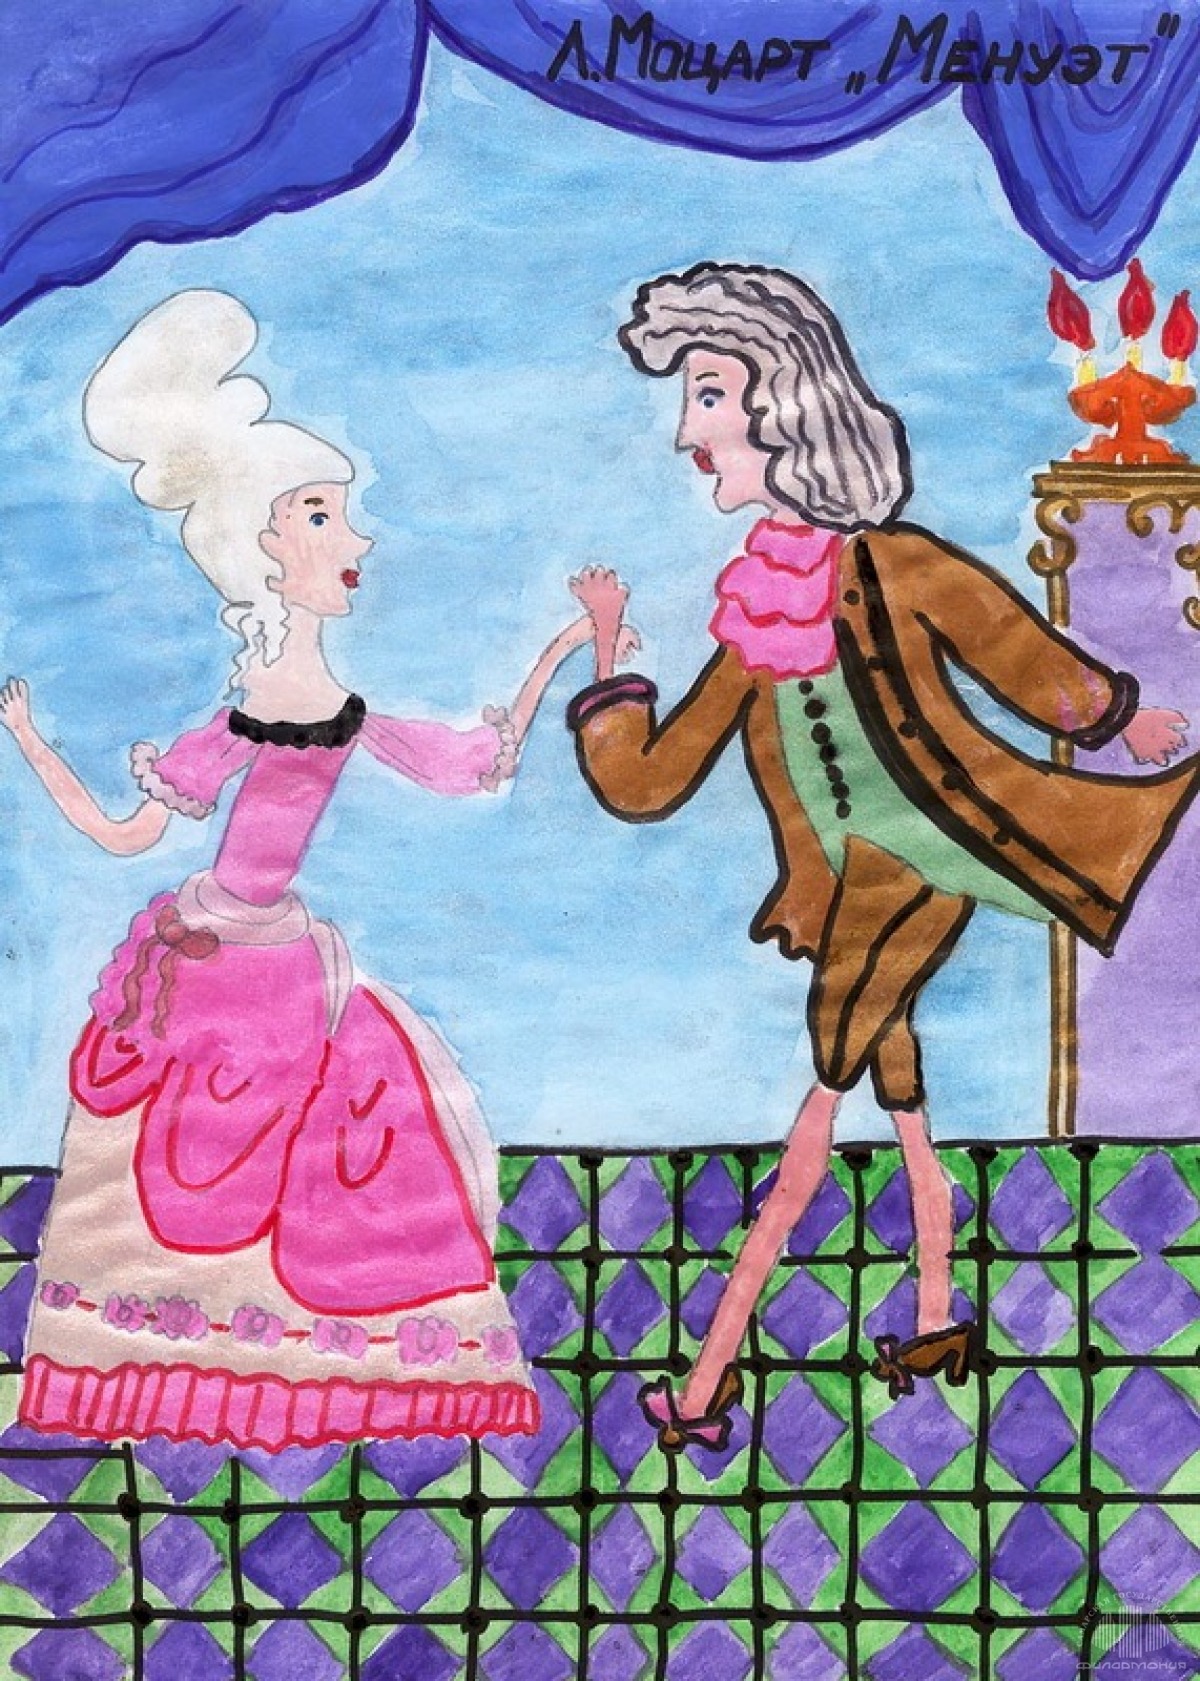 Бал детский рисунок. Рисунок к произведению Баха Менуэт. Иллюстрация к музыкальному произведению. Рисунок на тему бал. Танец Менуэт рисунок.